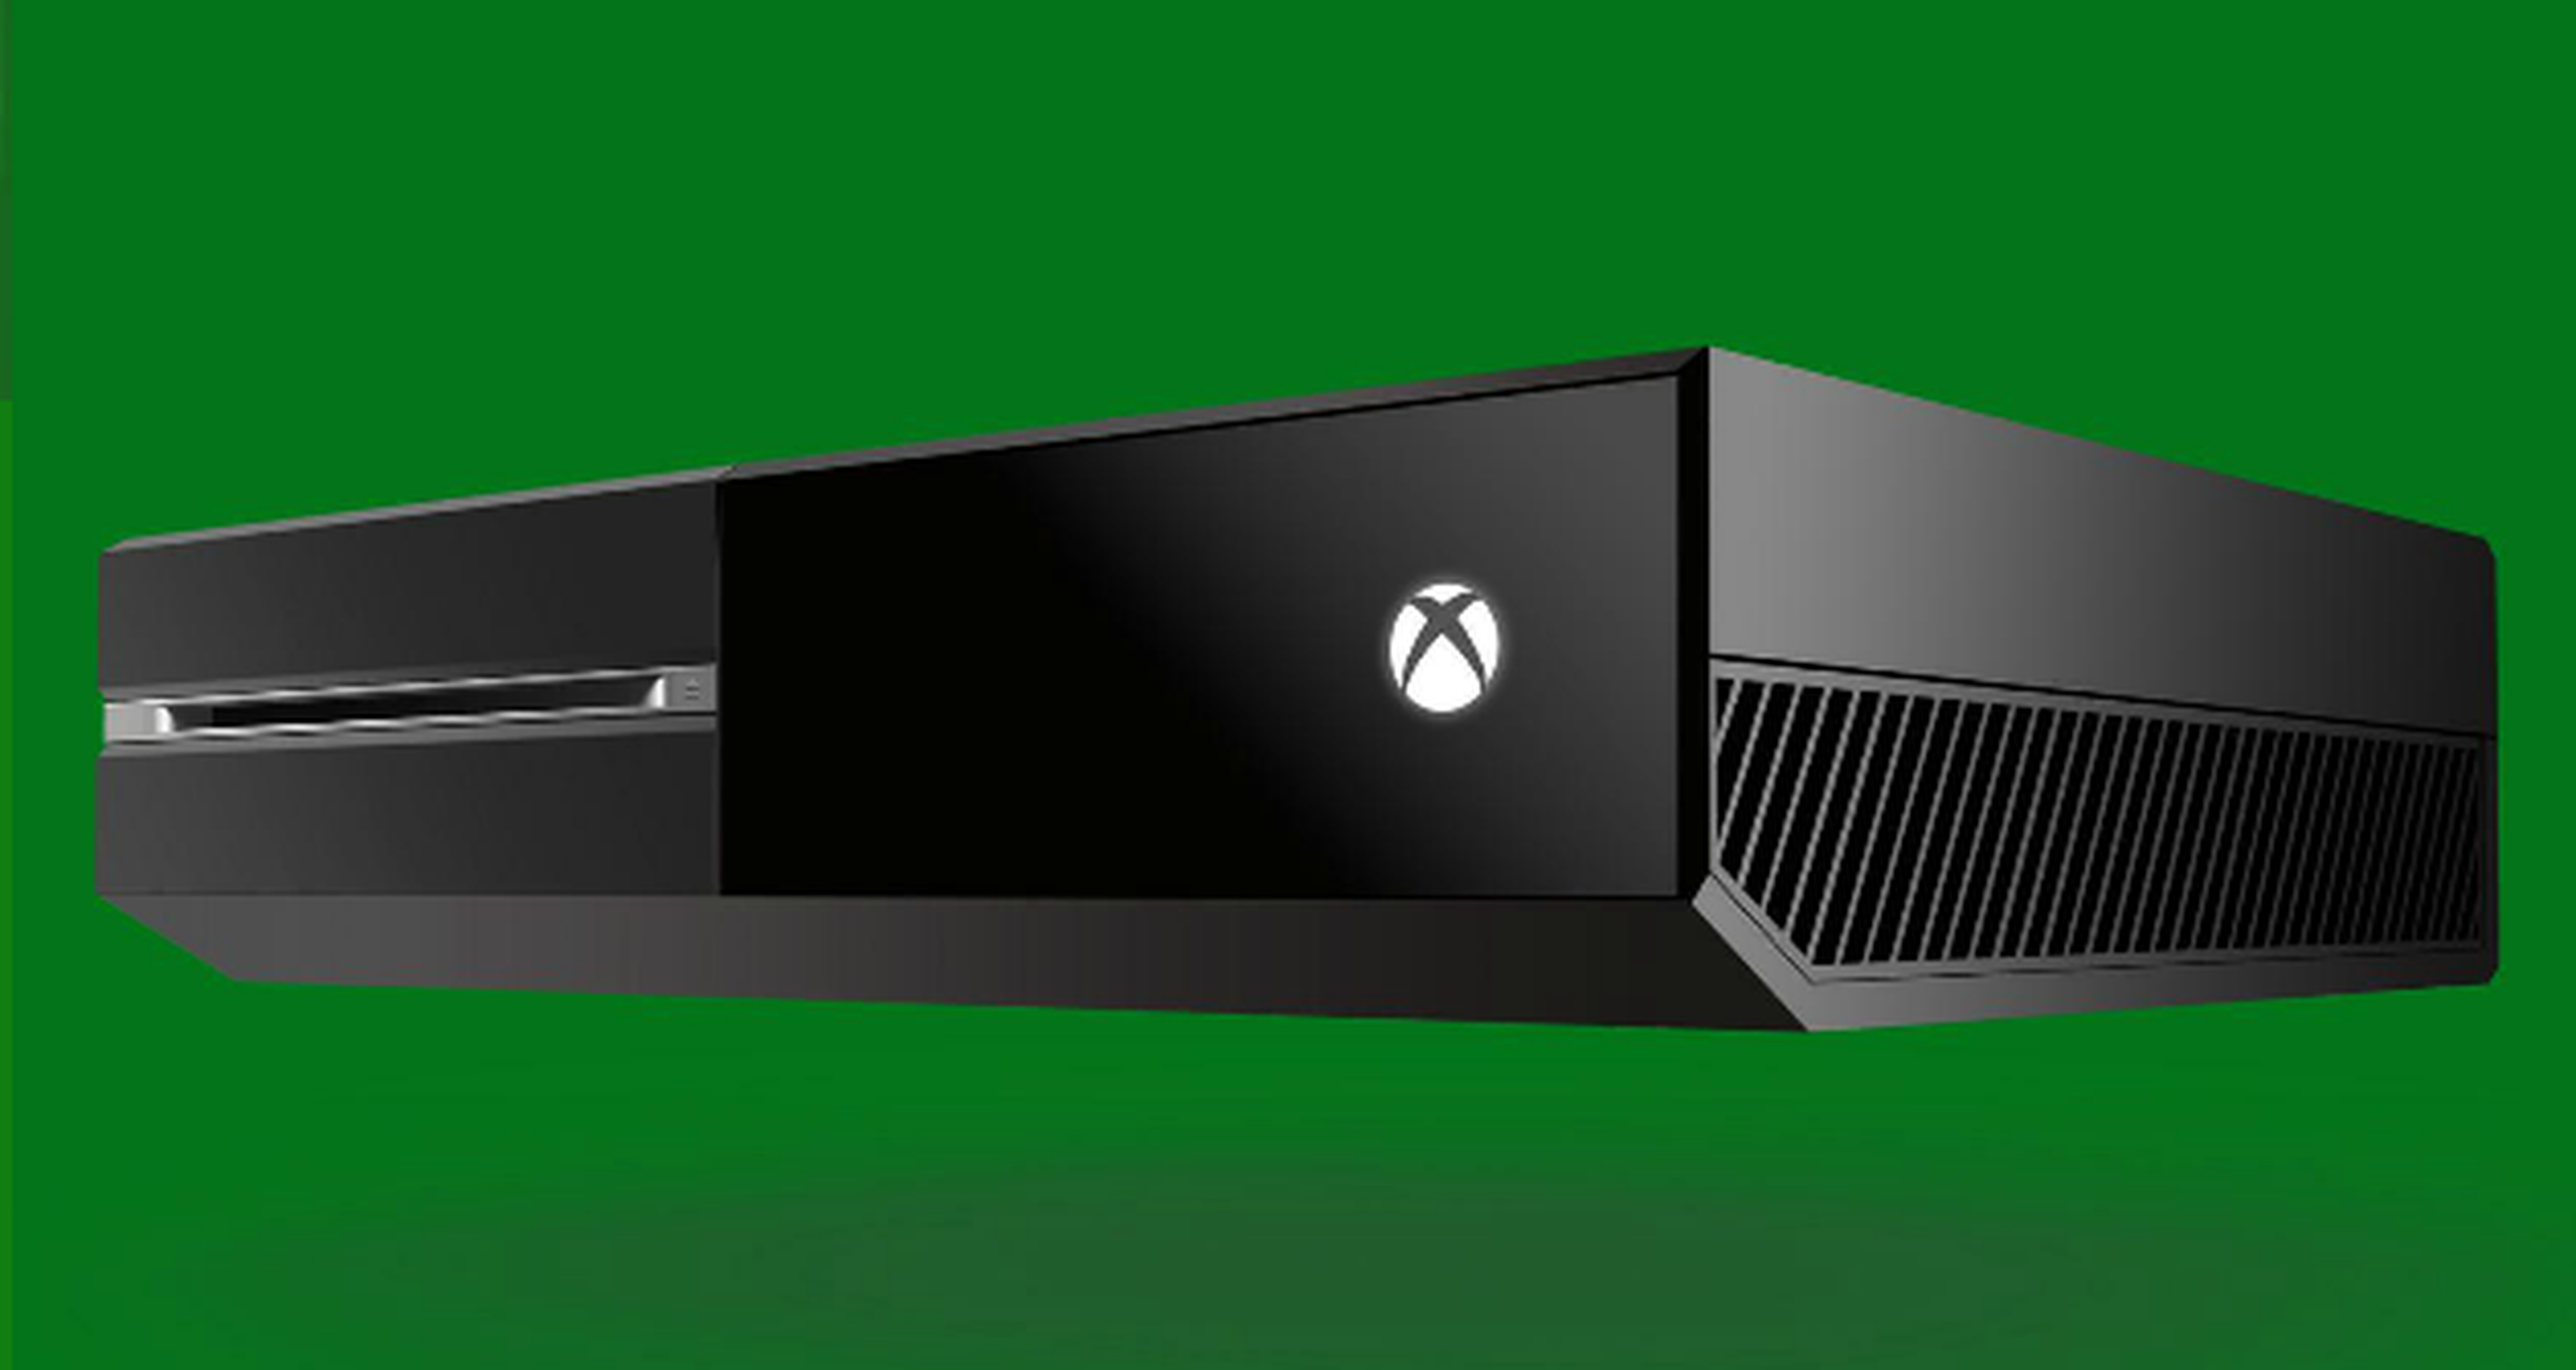 Gamescom 2015: La retrocompatibilidad de Xbox One estará disponible en noviembre